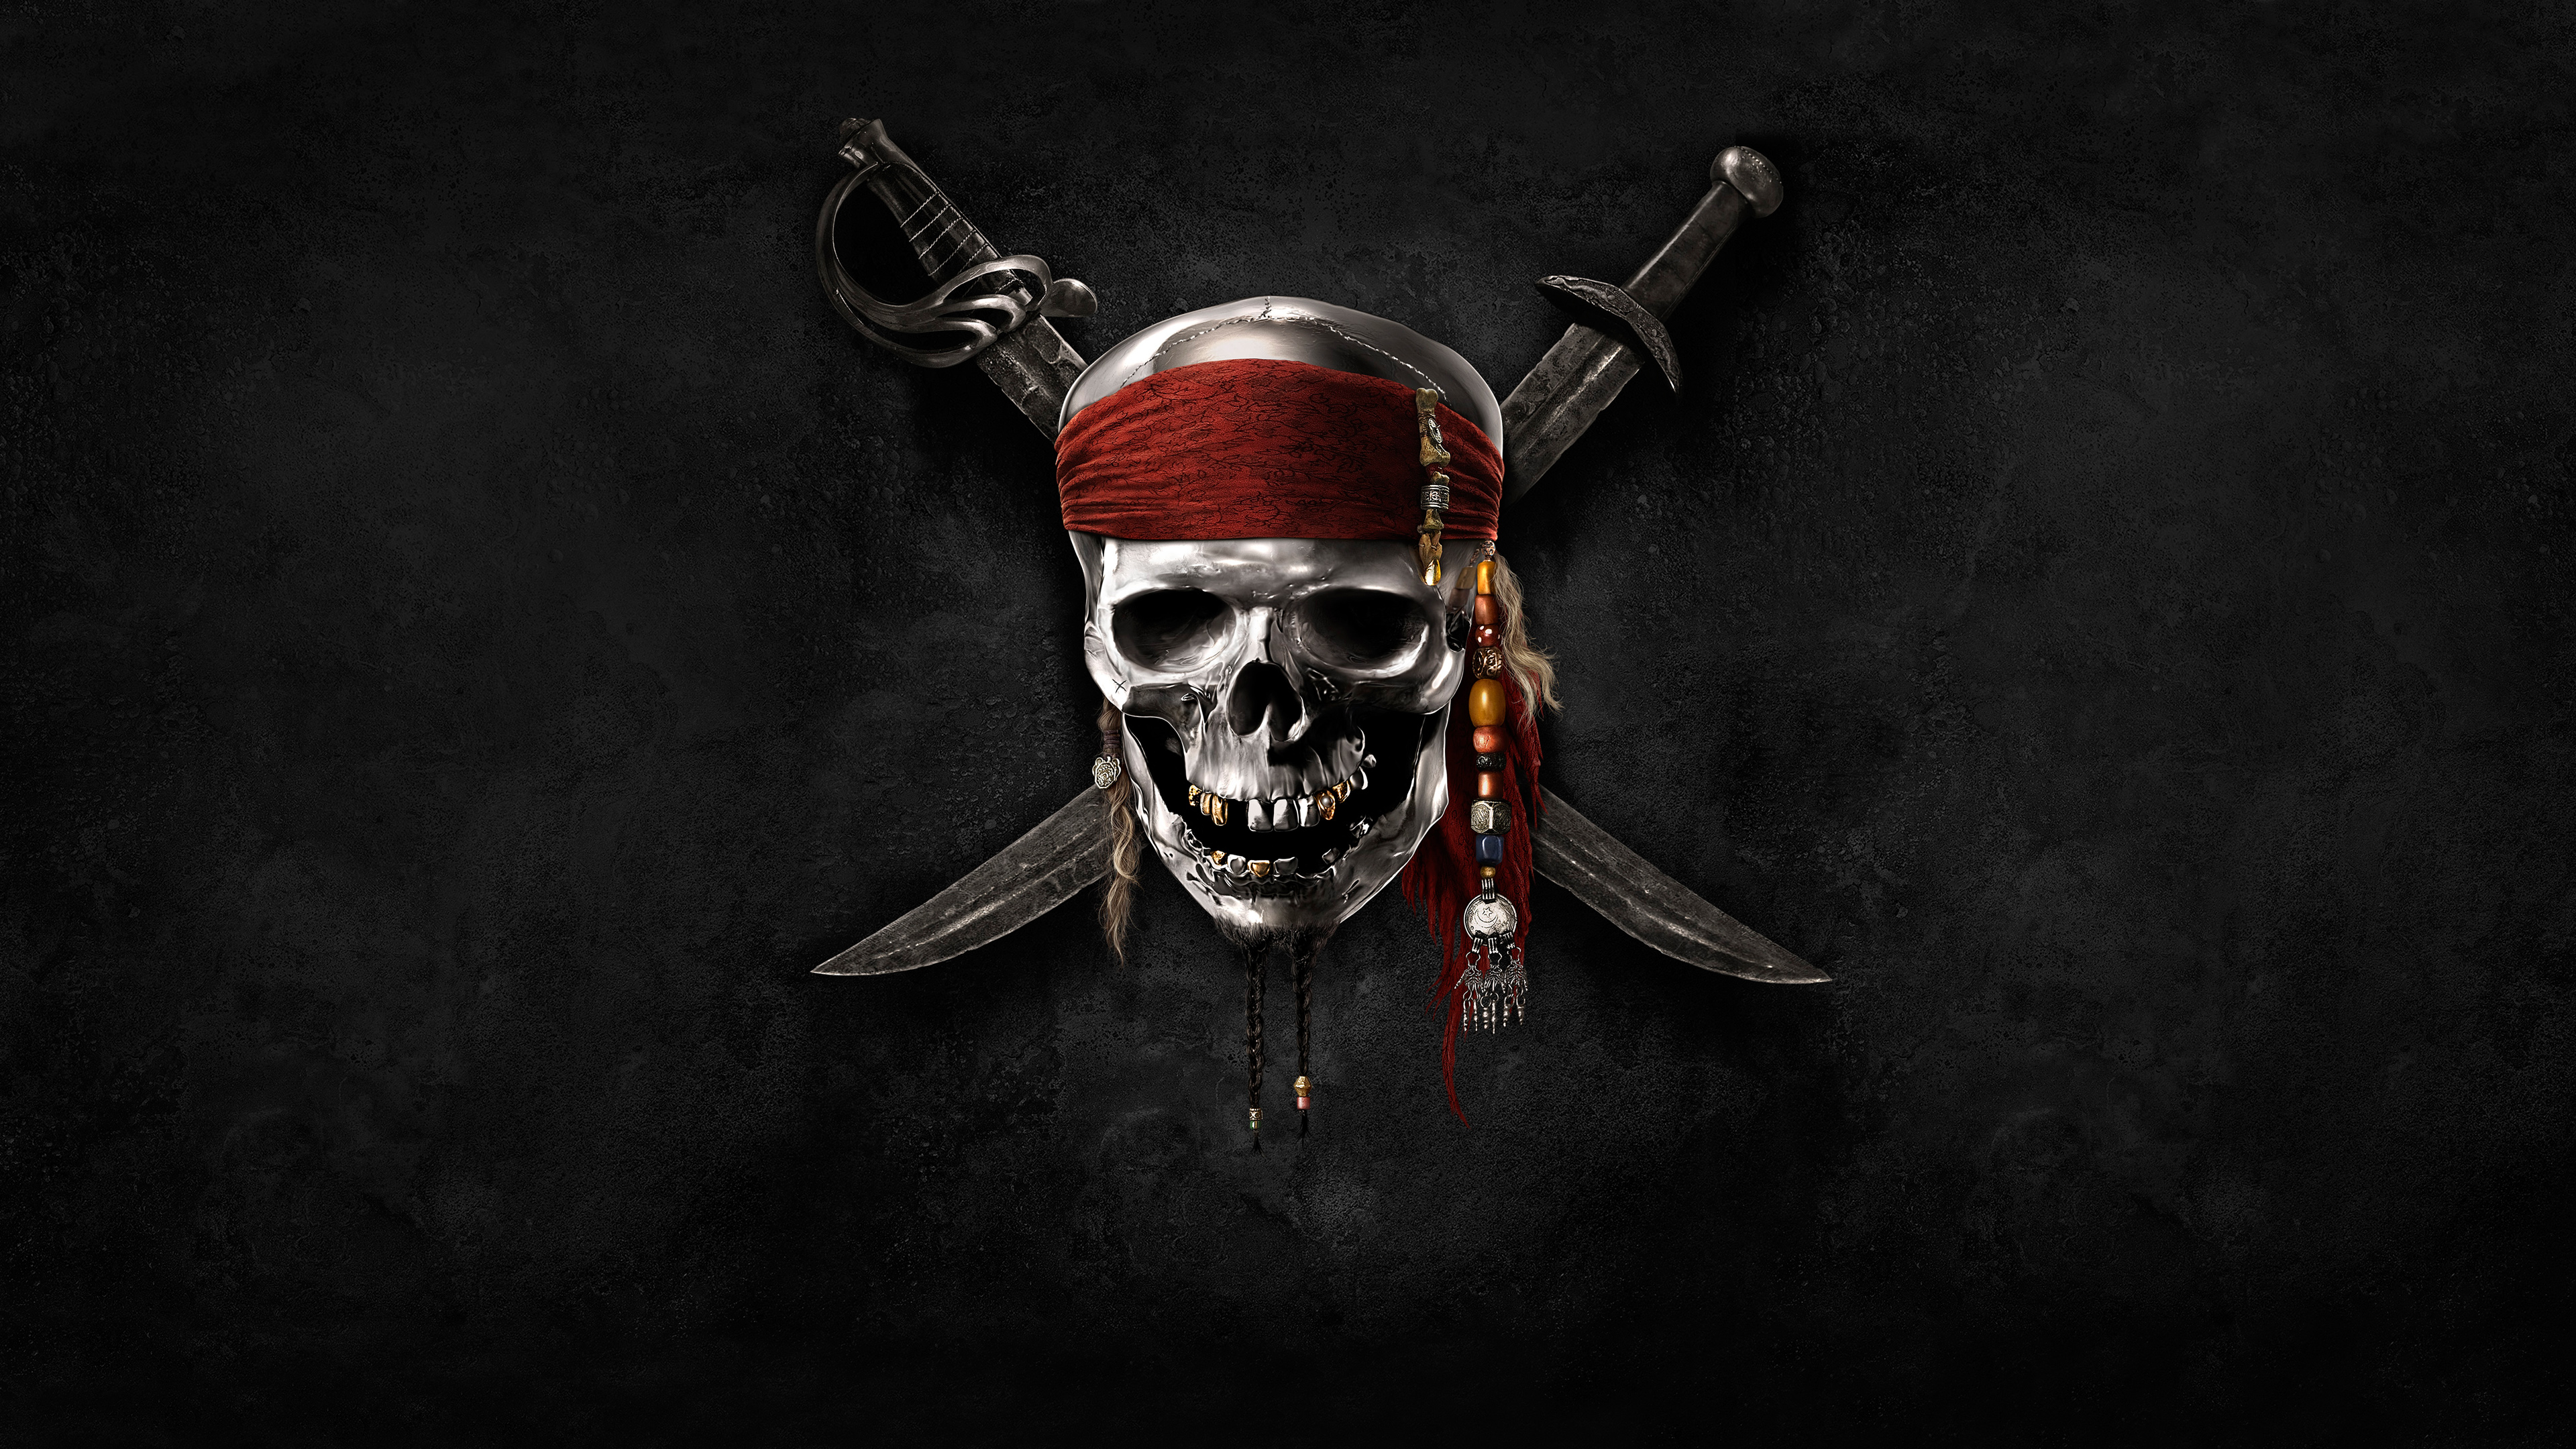 Популярные заставки и фоны Пираты Карибского Моря на компьютер